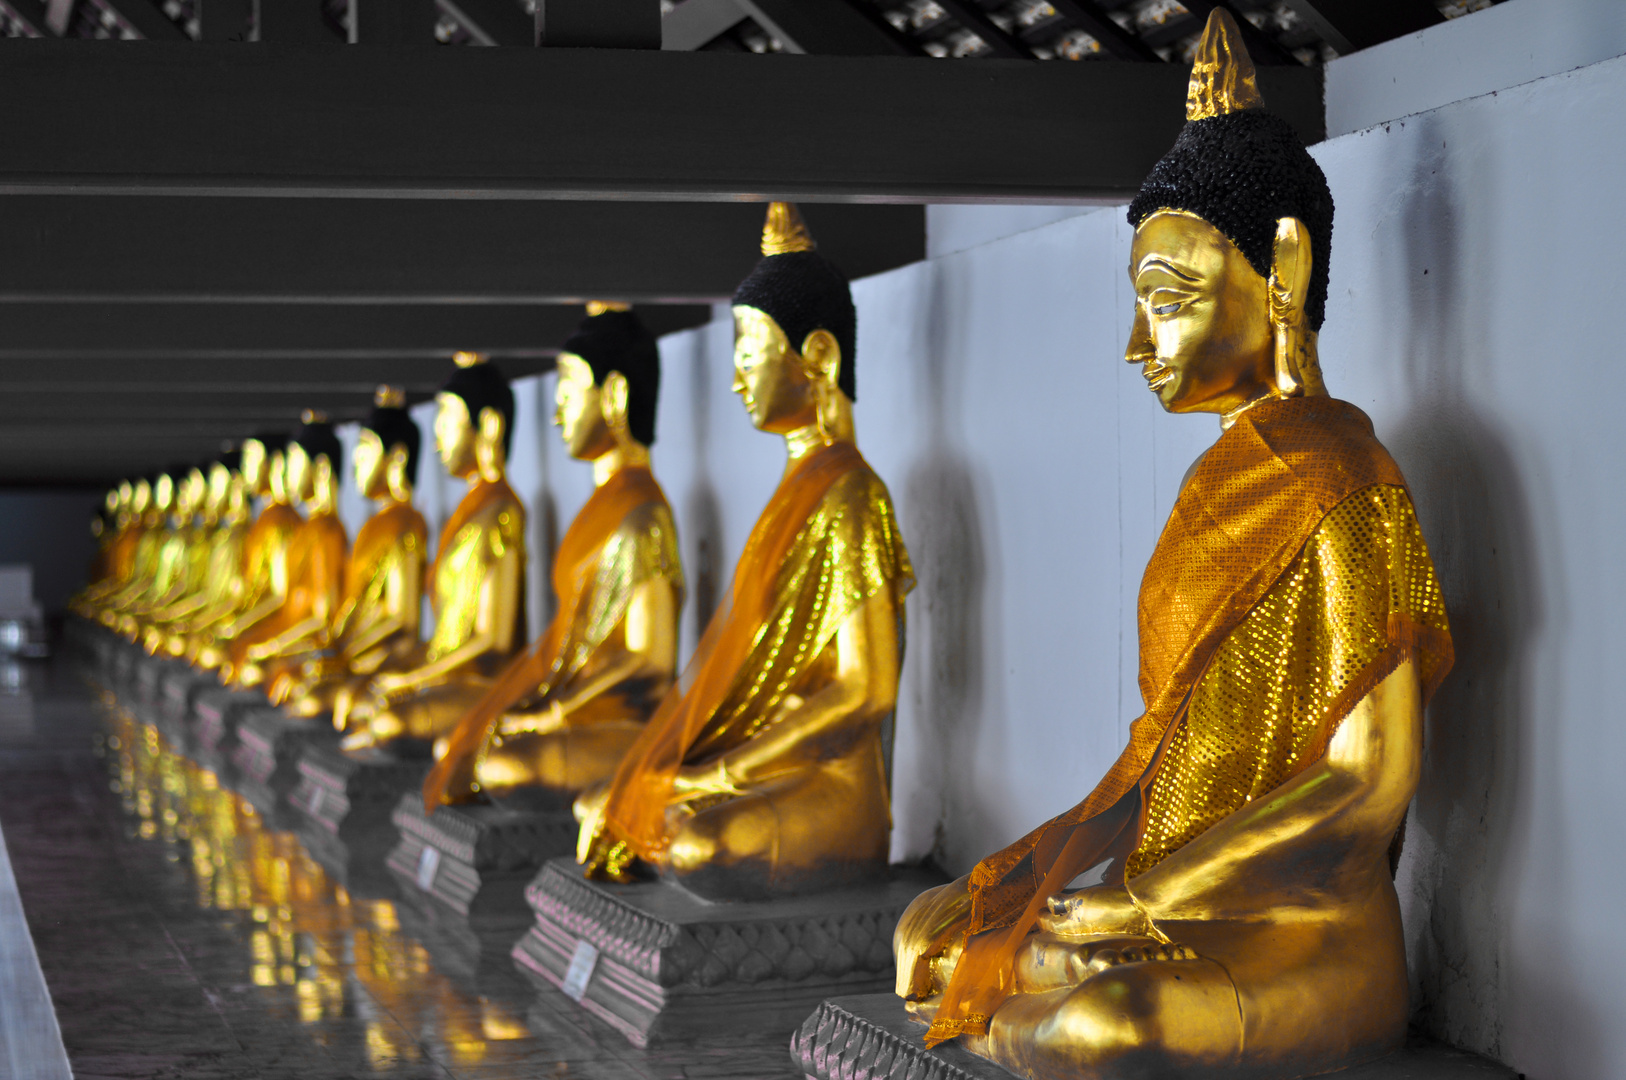 goldene Buddhas